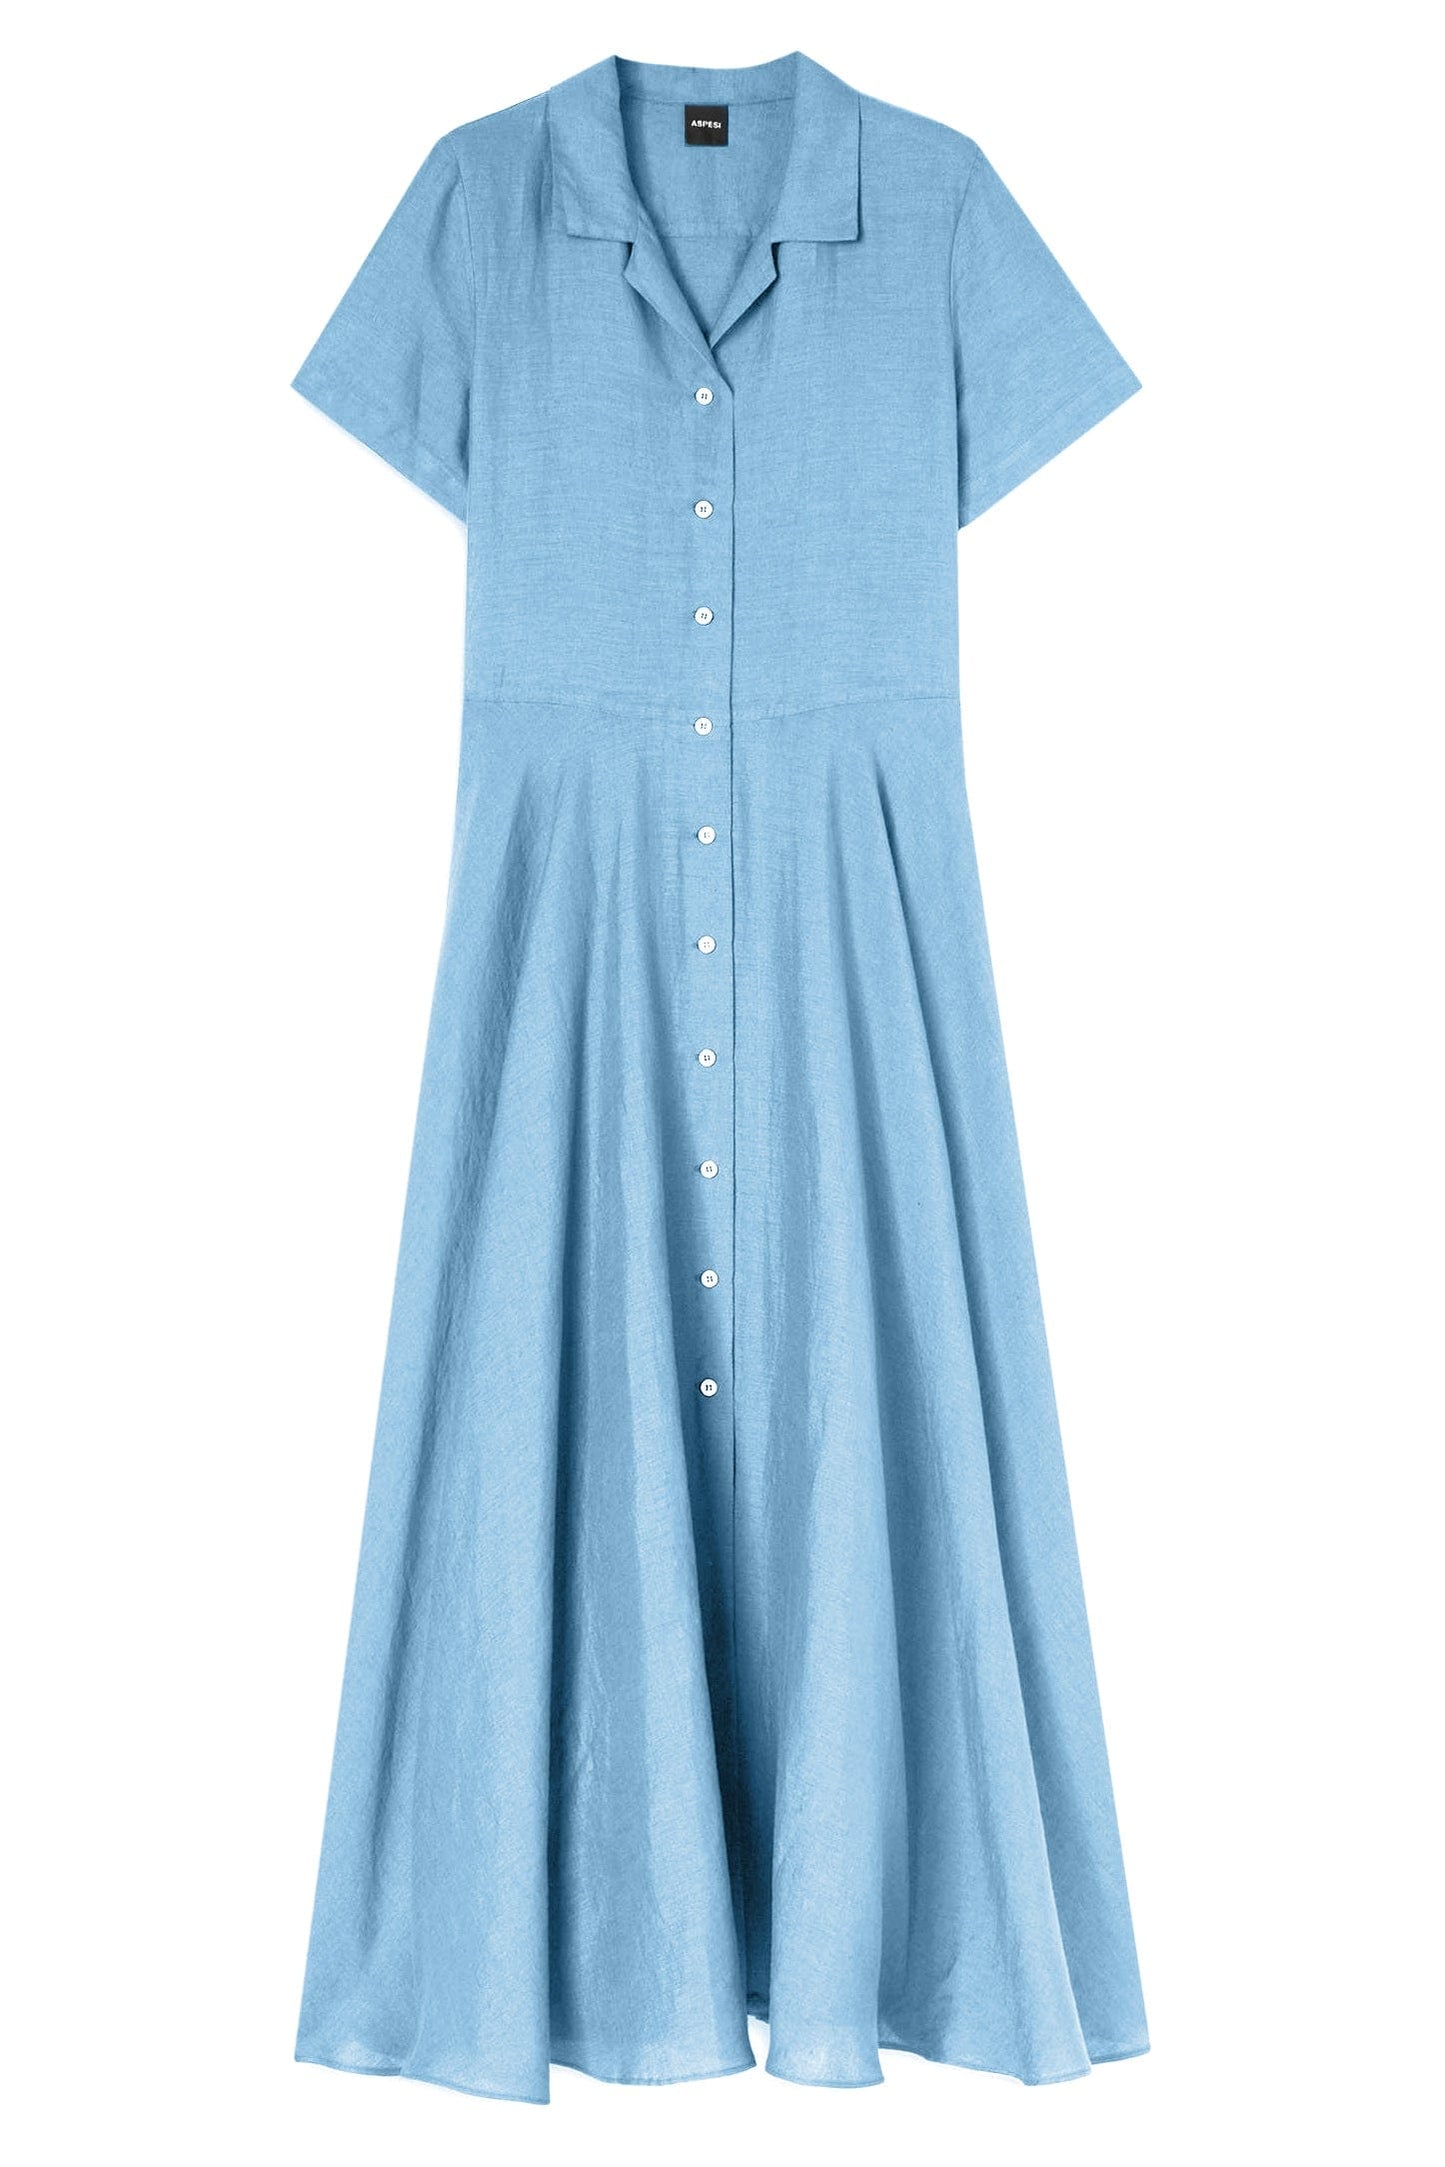 ASPESI-Short Sleeve Linen Dress-